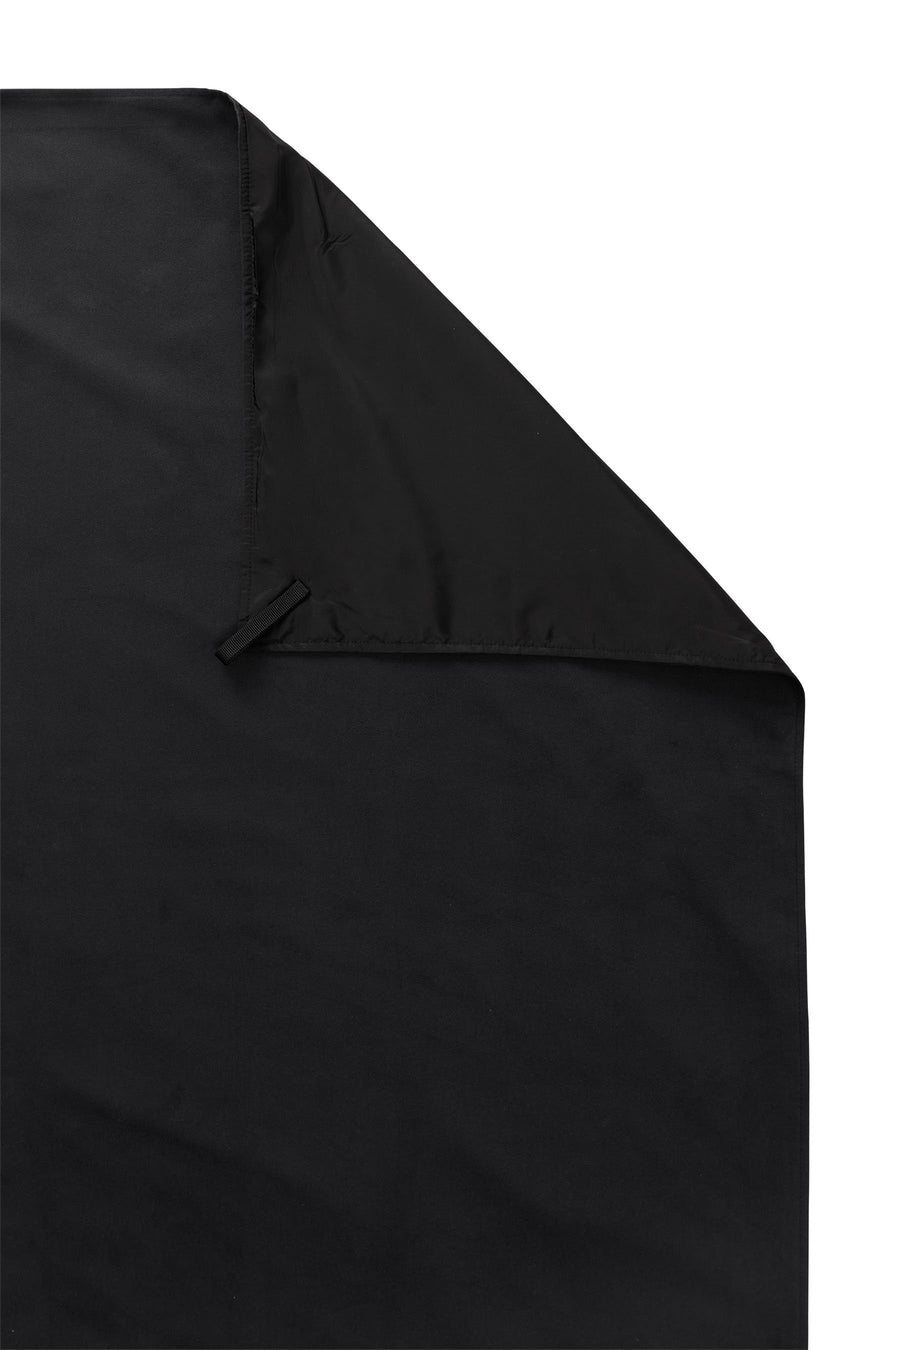 Festival Blanket: Black on Black